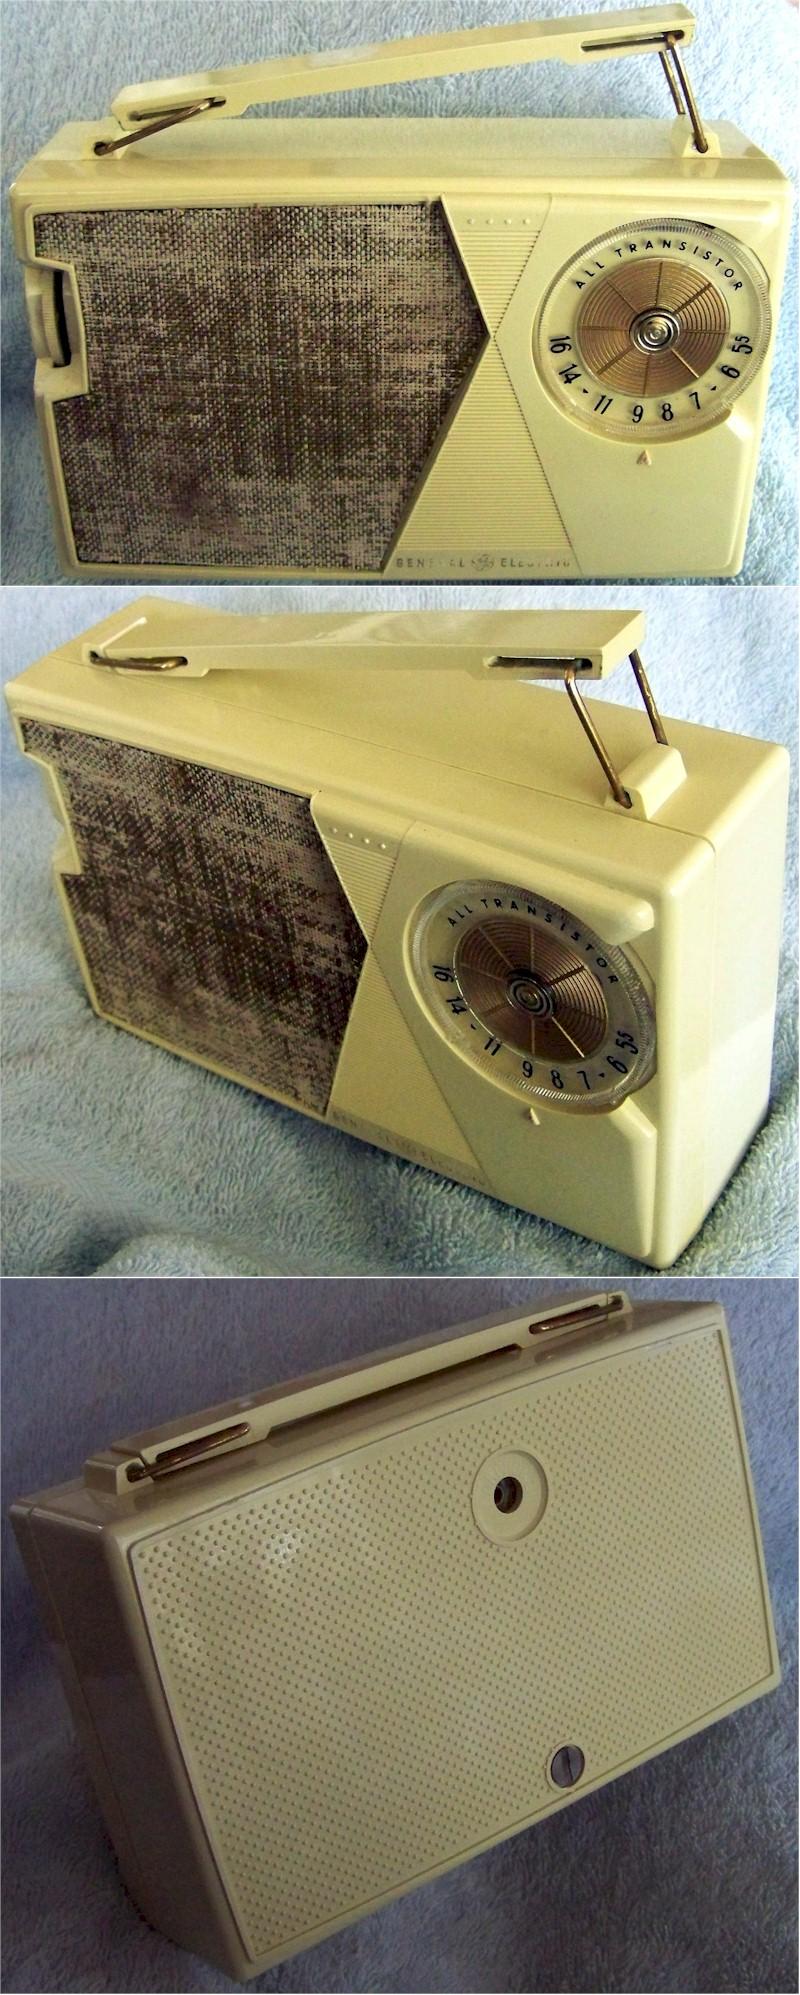 General Electric P-808E Portable Transistor (1962)